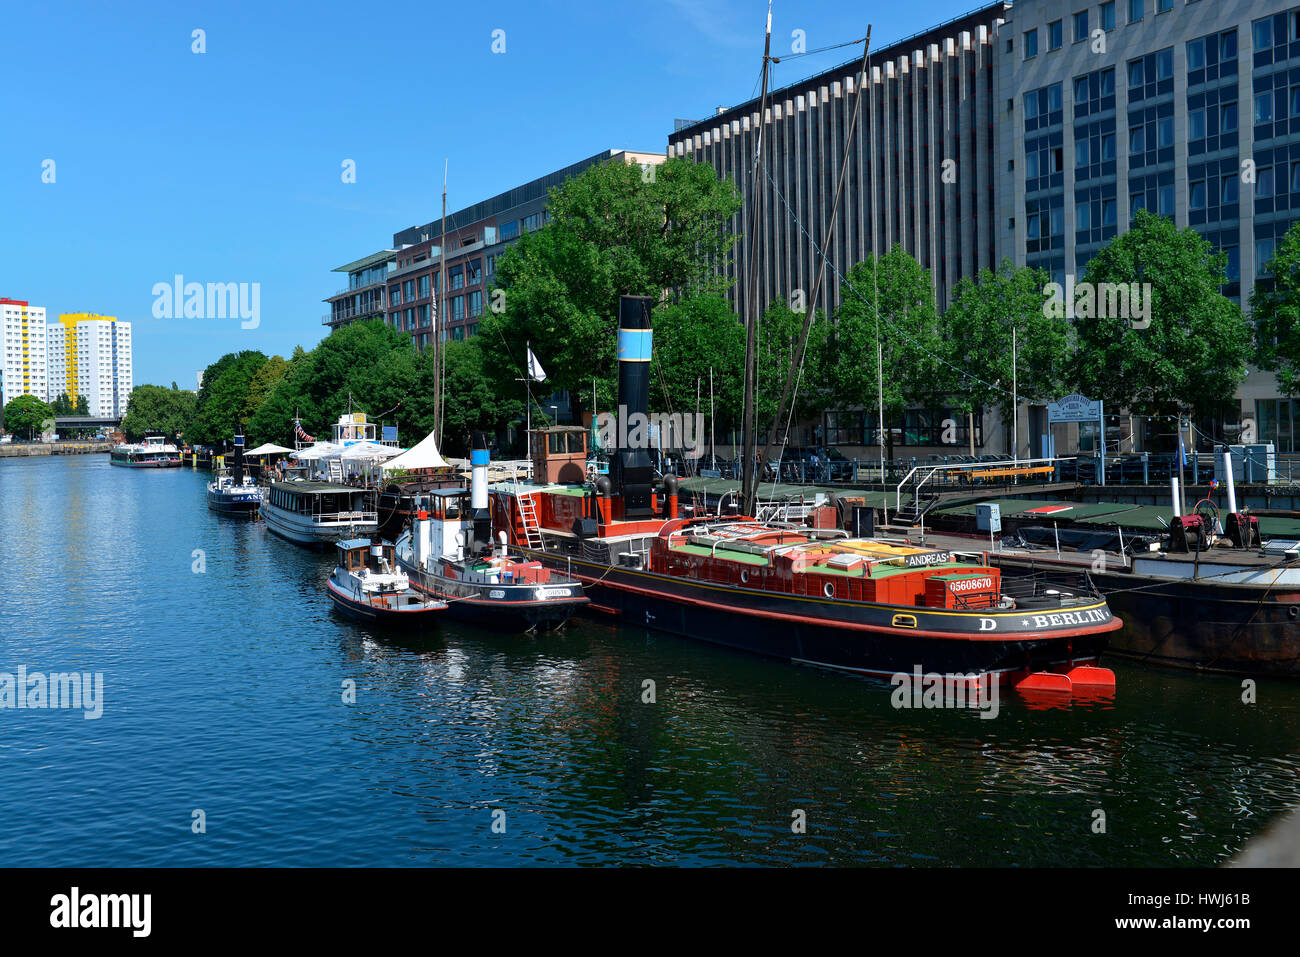 Historischer Hafen, Fischerinsel, Mitte, Berlin, Deutschland Stock Photo